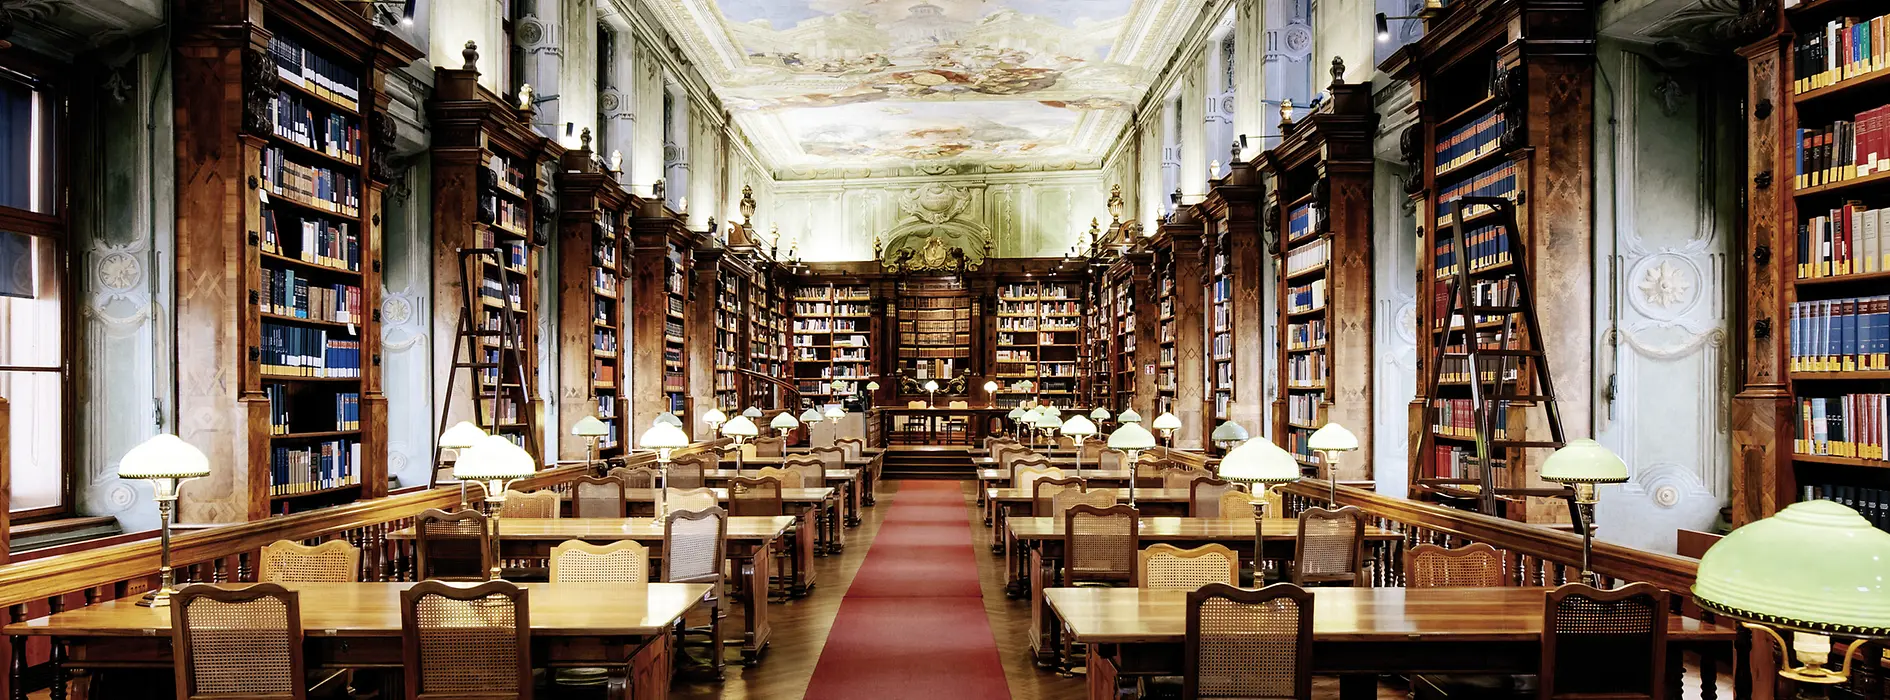 Sala de lectura en la Biblioteca Nacional